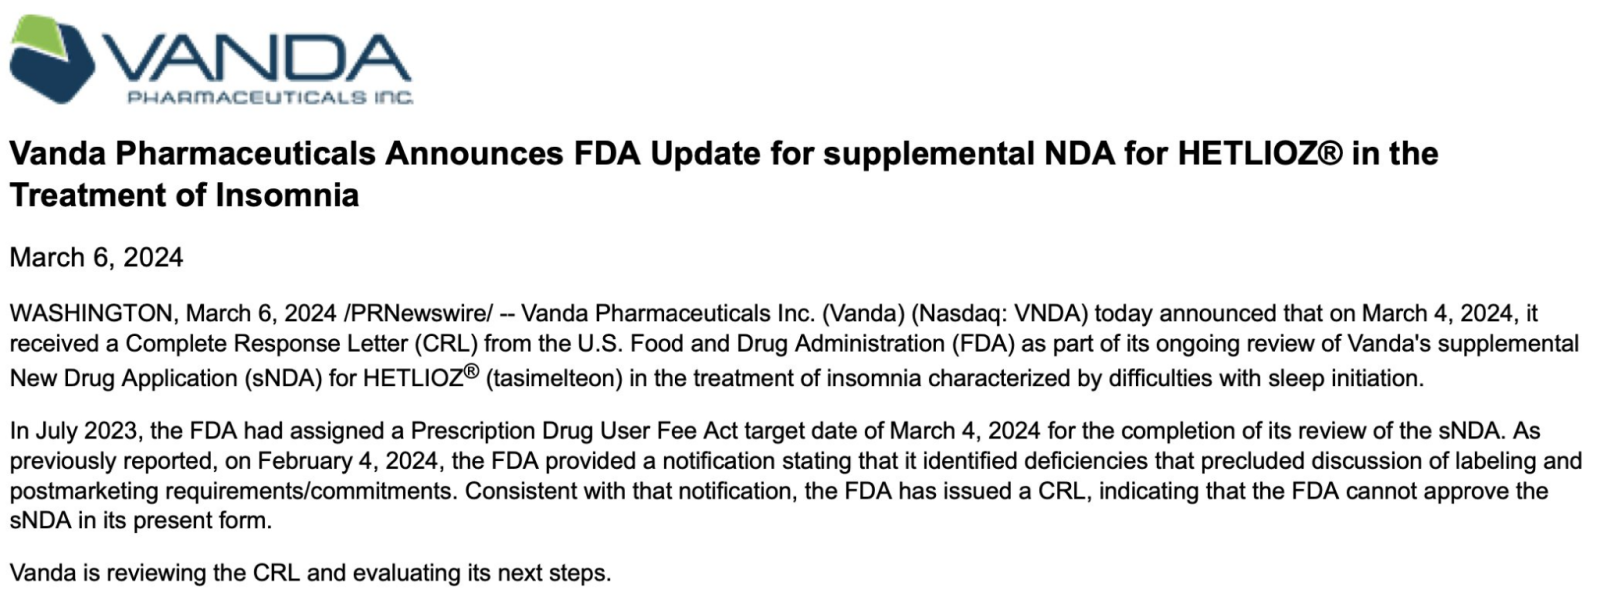 $萬達生物製藥 (VNDA.US)$ ⚠️ FDA 於 3 月 4 日發出用於治療失眠的 HETLIOZ® SNDA 的 CRL 🙁 🔎 VNDA 正在審查 CRL 並評估下一步... 🗓️ 自治安排發展日期：03/04/24